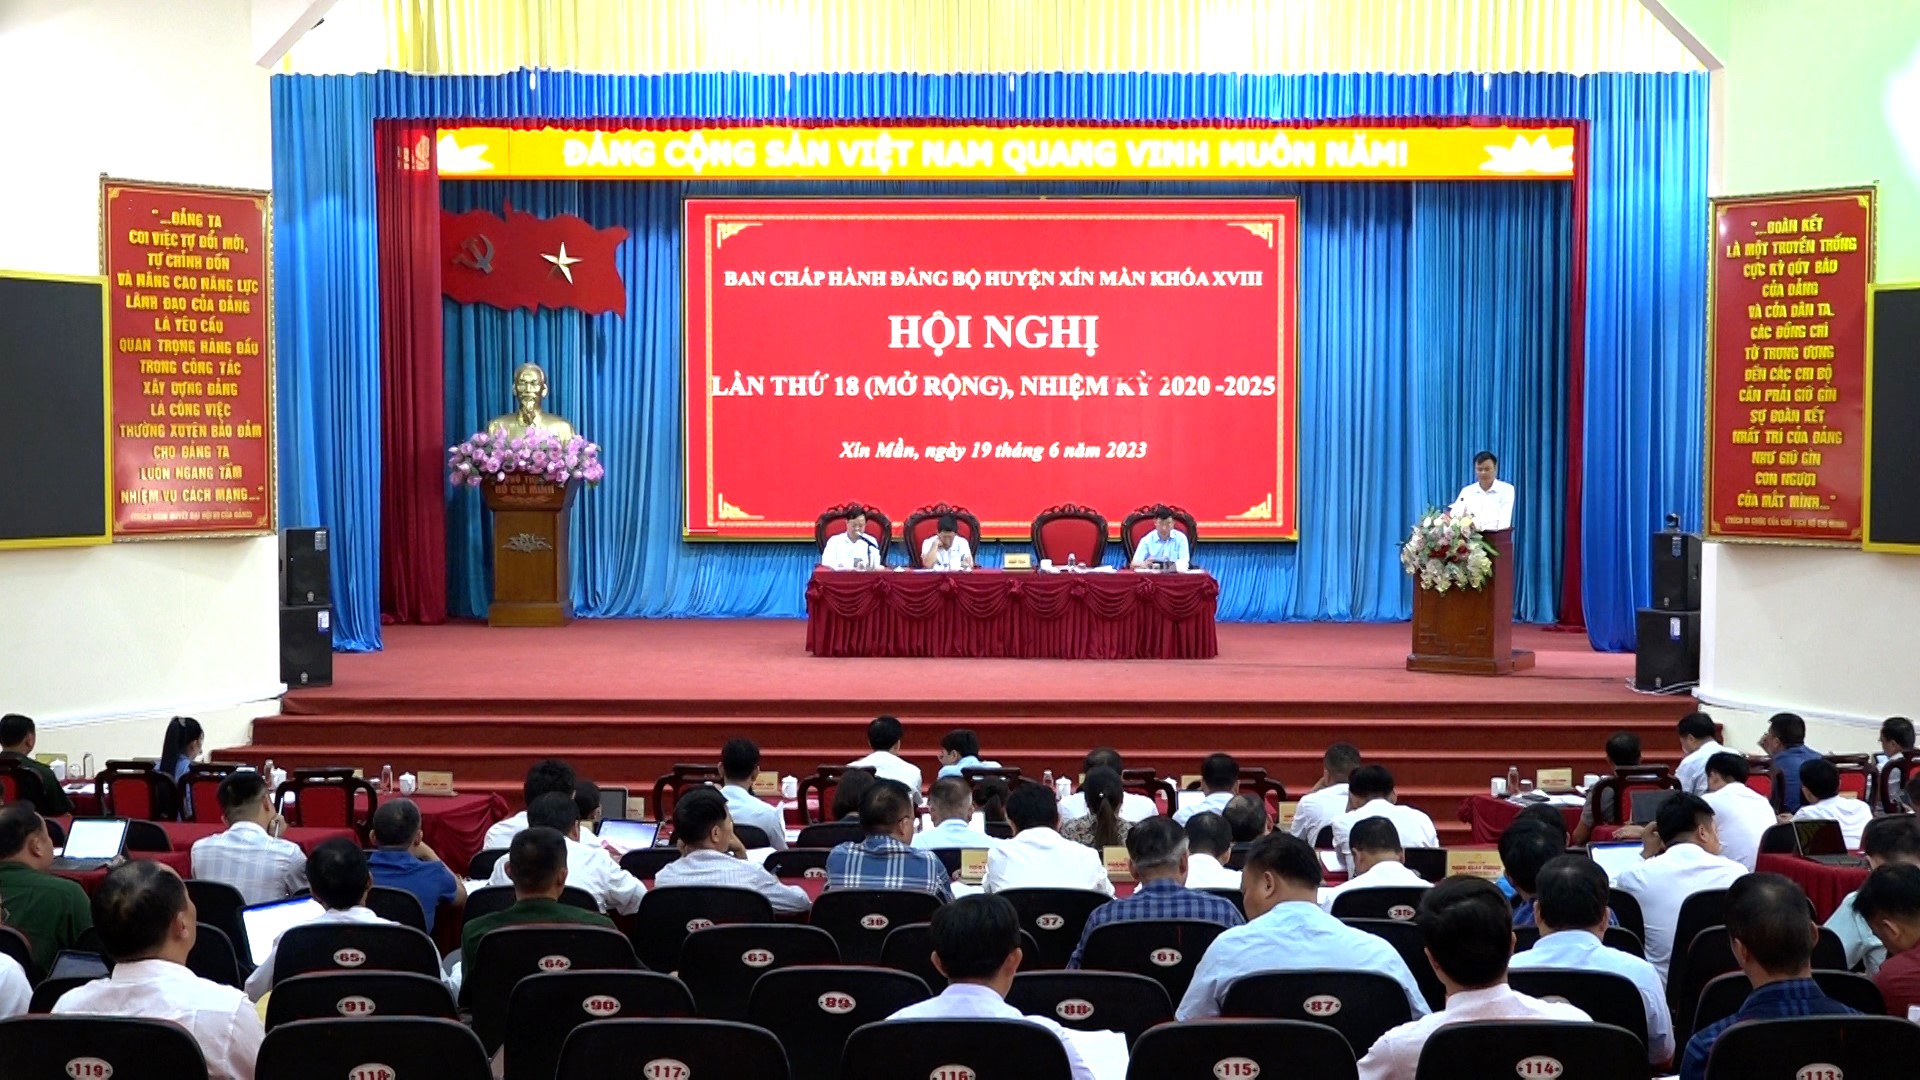 Hội nghị Ban Chấp hành Đảng bộ huyện Xín Mần lần thứ 18 (mở rộng)